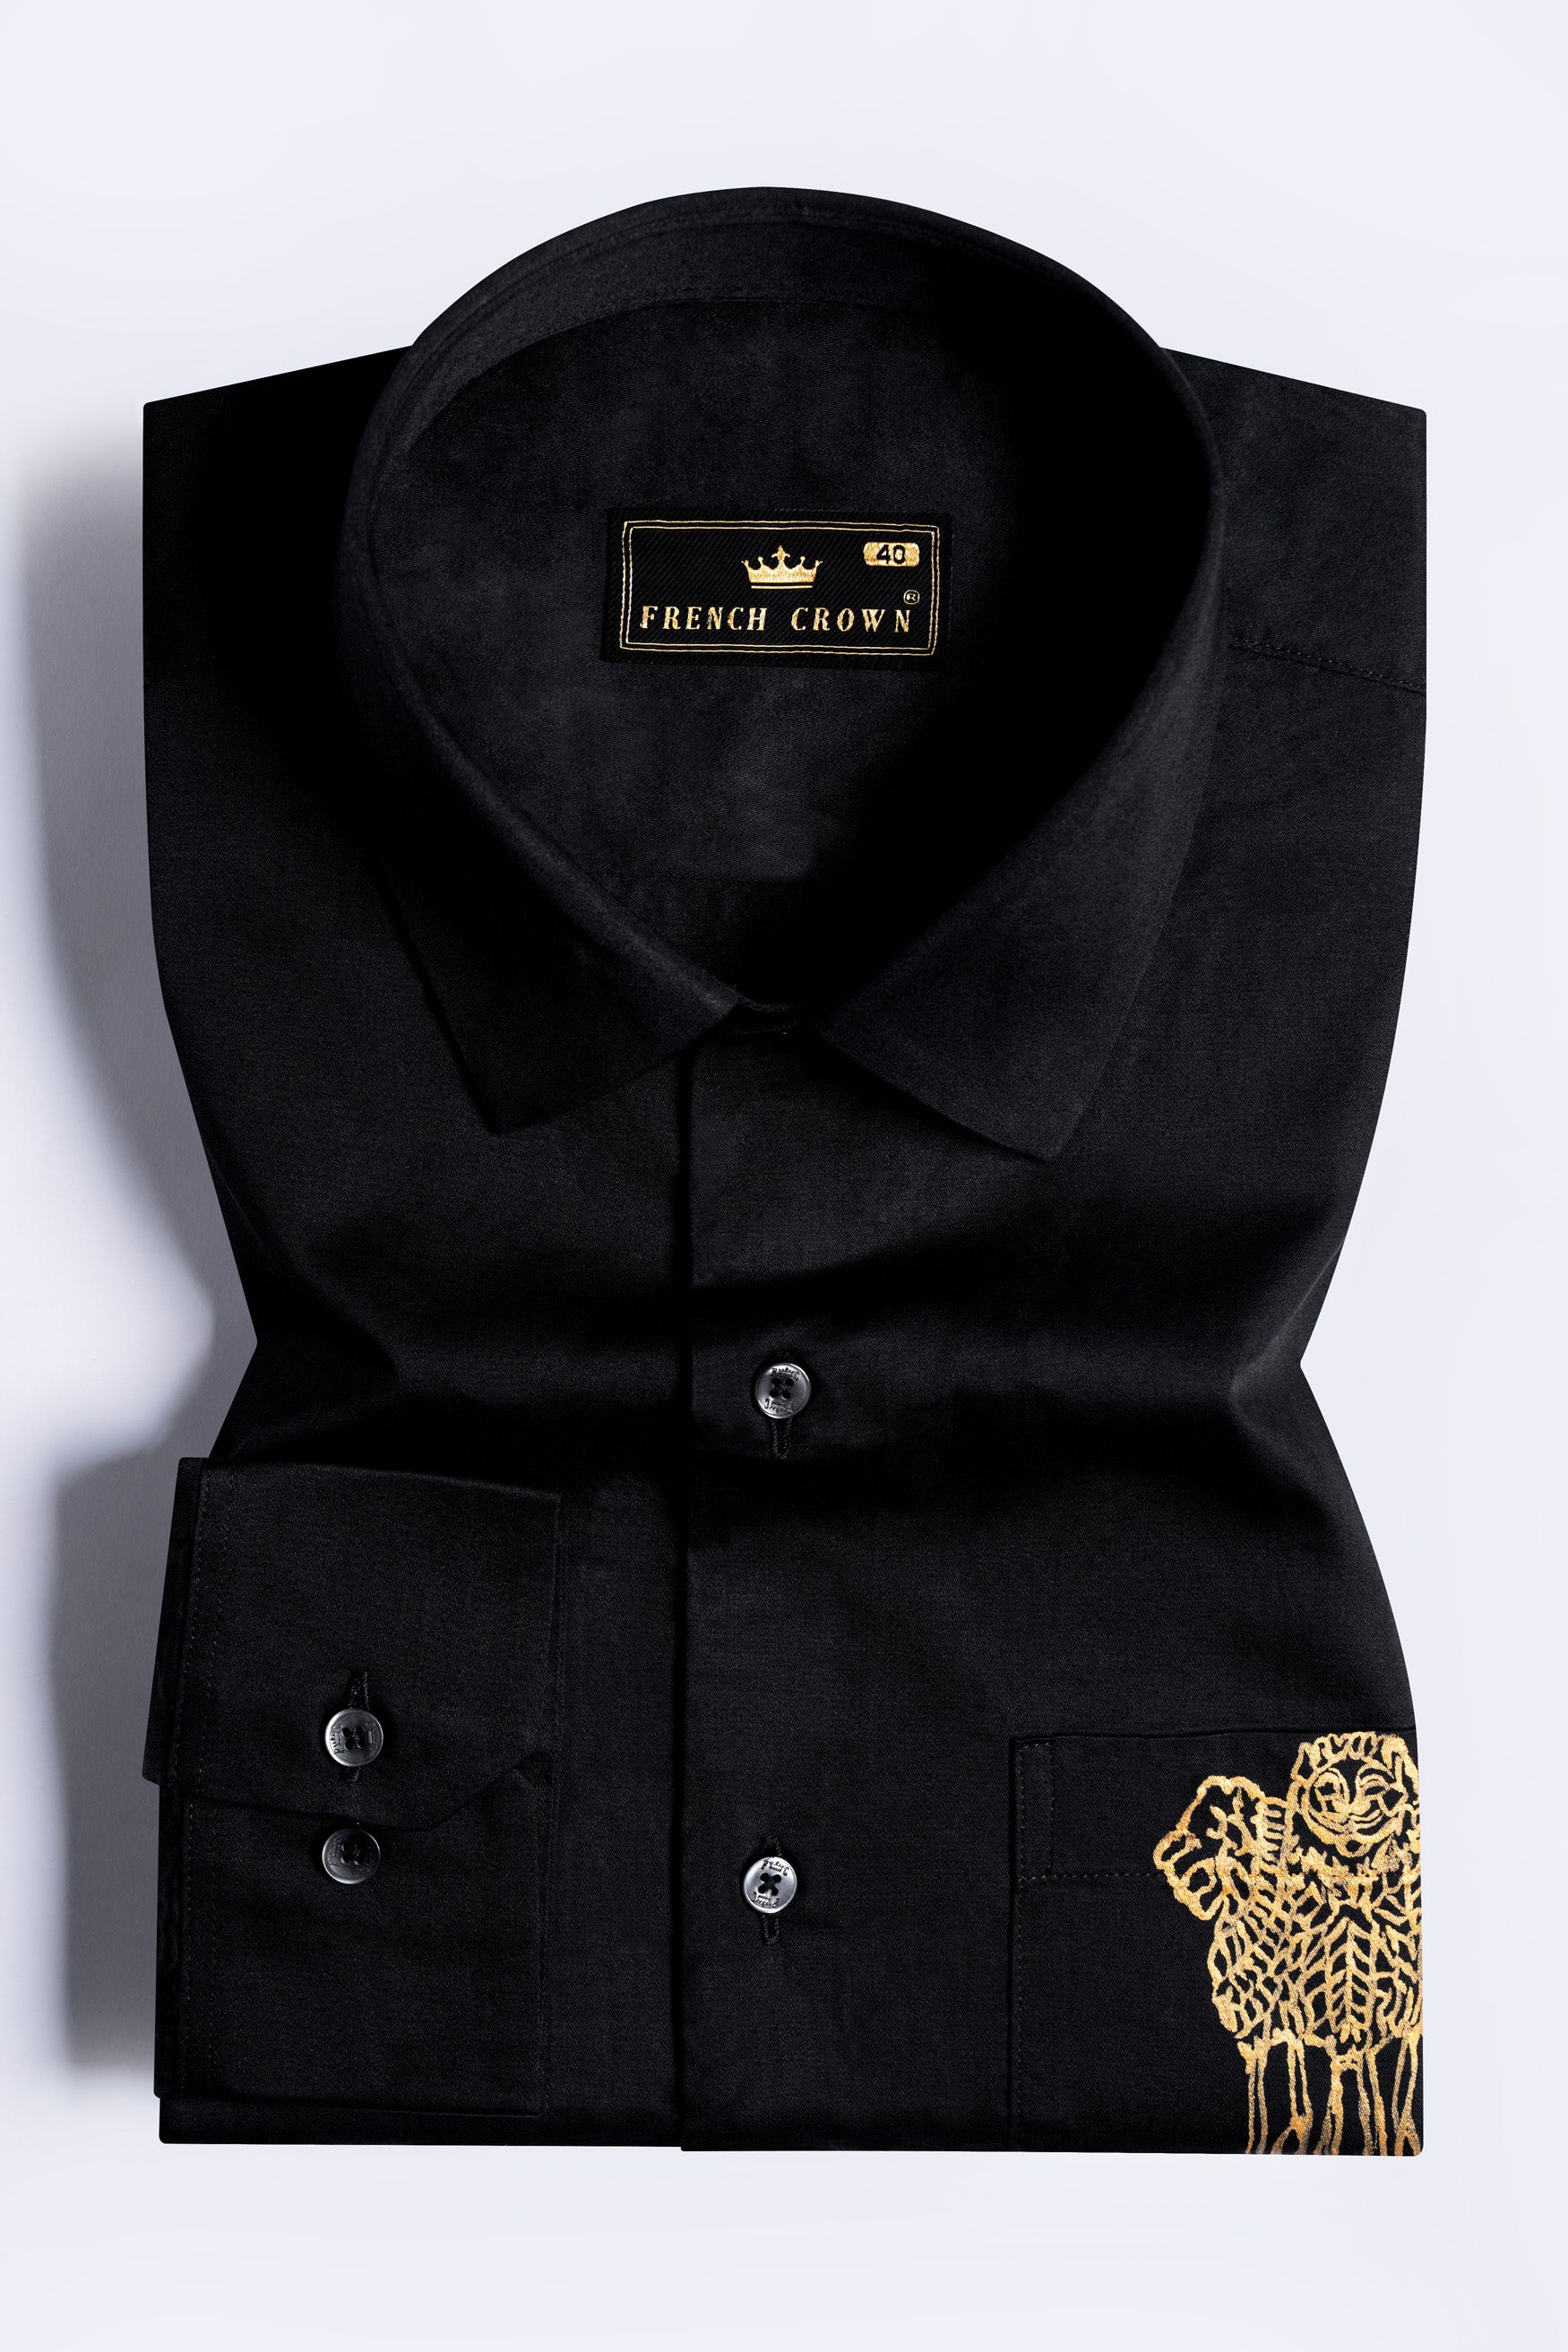 Jade Black Indian National Emblem Hand Painted Subtle Sheen Super Soft Premium Cotton Designer Shirt